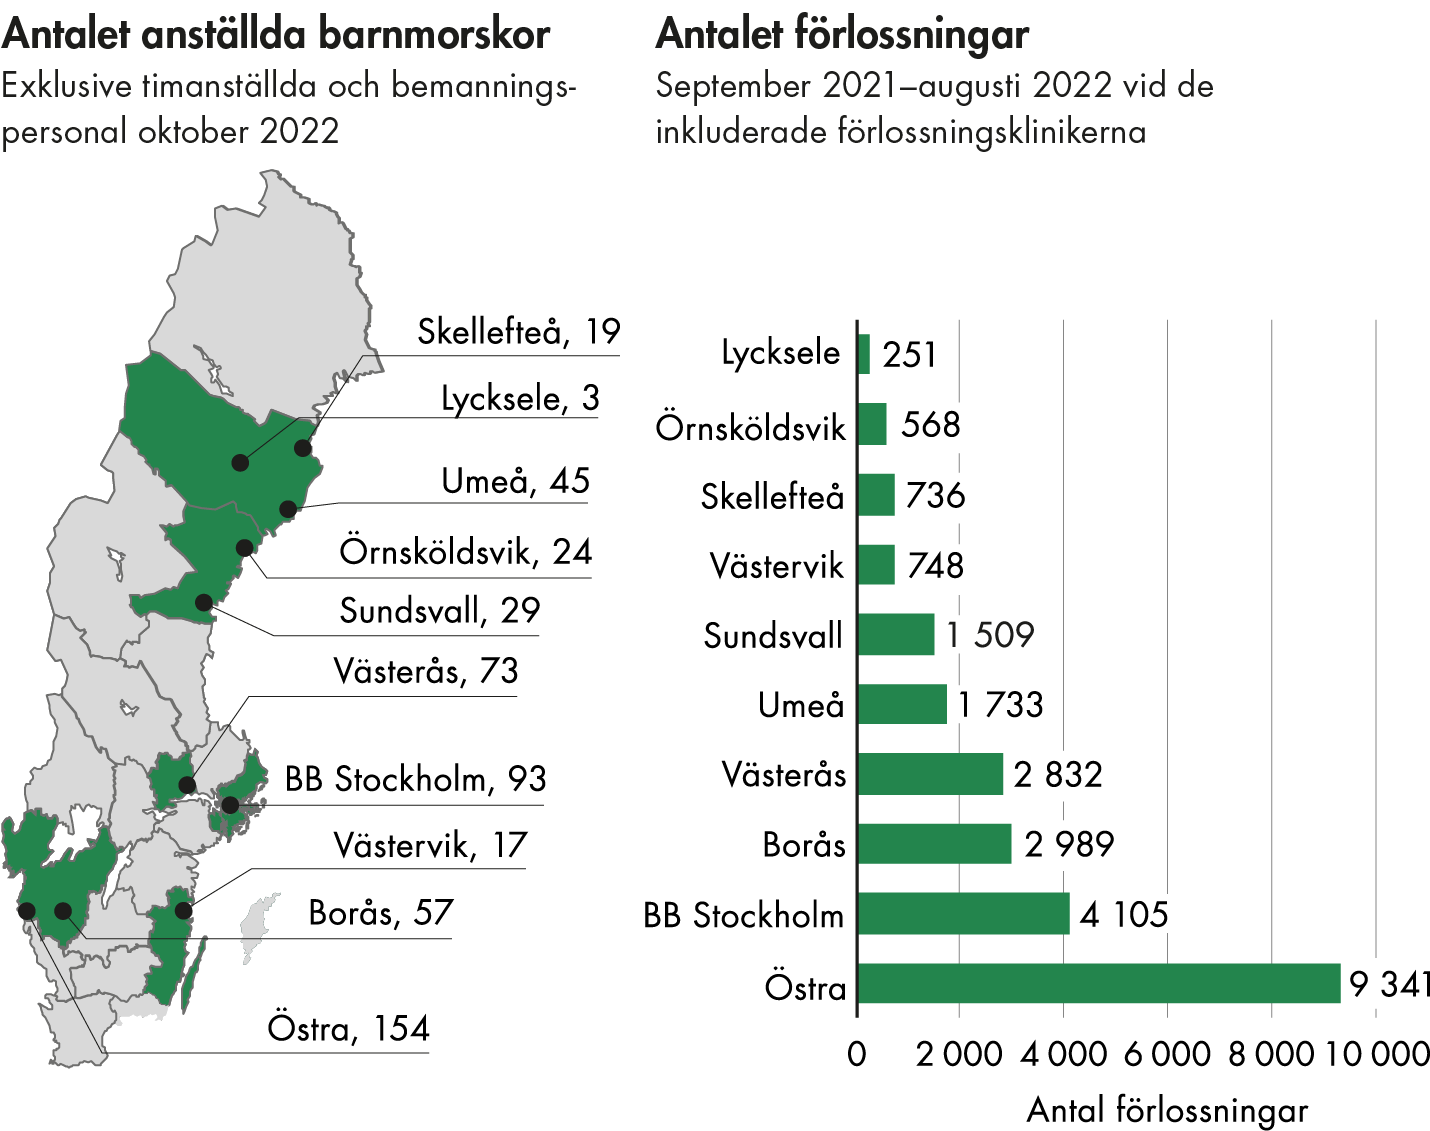 Lycksele har 251 förlossningar per år och 3 barnmorskor. Örnsköldsvik, Skellefteå och Västervik har 568-748 förlossningar per år och 17-24 barnmorskor per klinik. Sundsvall och Umeå har 1509 respektive 1733 förlossningar per år och 29 respektive 45 barnmorskor. Västerås och Borås har 2832 respektve 2989 förlossningar per år och 73 respektive 57 barnmorskor. BB Stockholm och Östra sjukhuset har 4105 respeoektive 9341 förlossningar per år och 93 respektive 154 barnmorskor. 